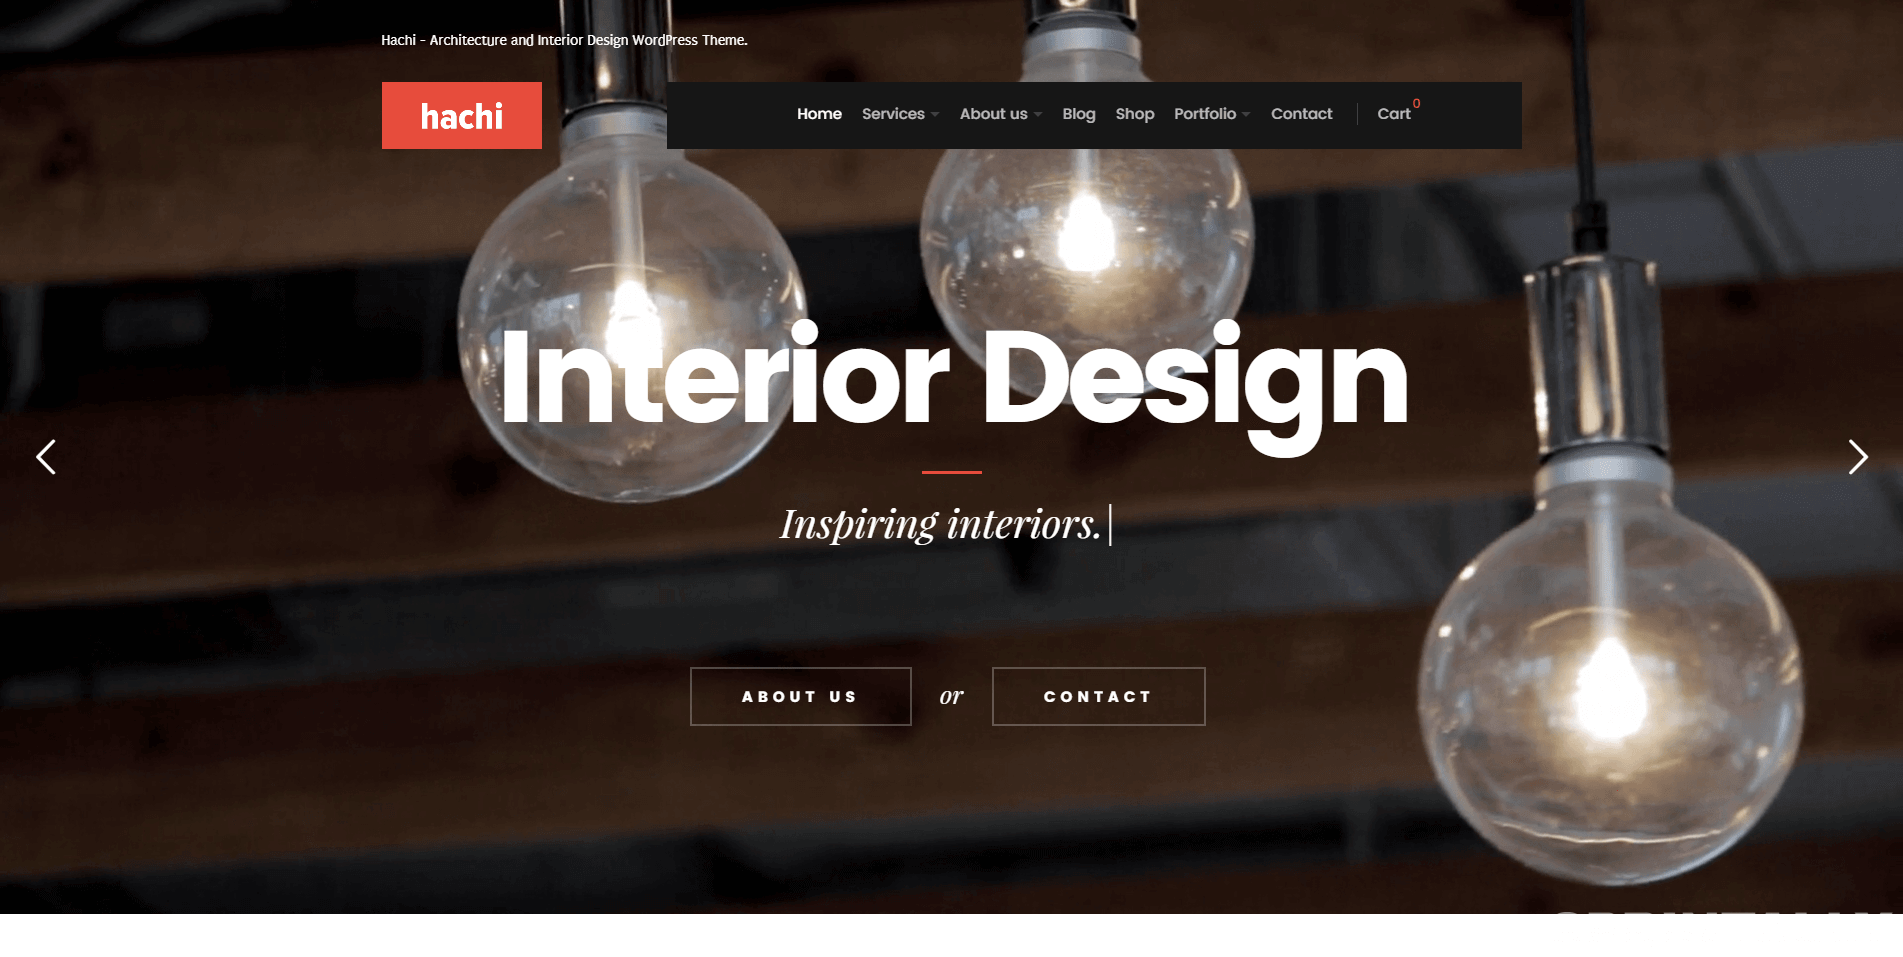 Hachi - Architecture and Interior Design WordPress Theme